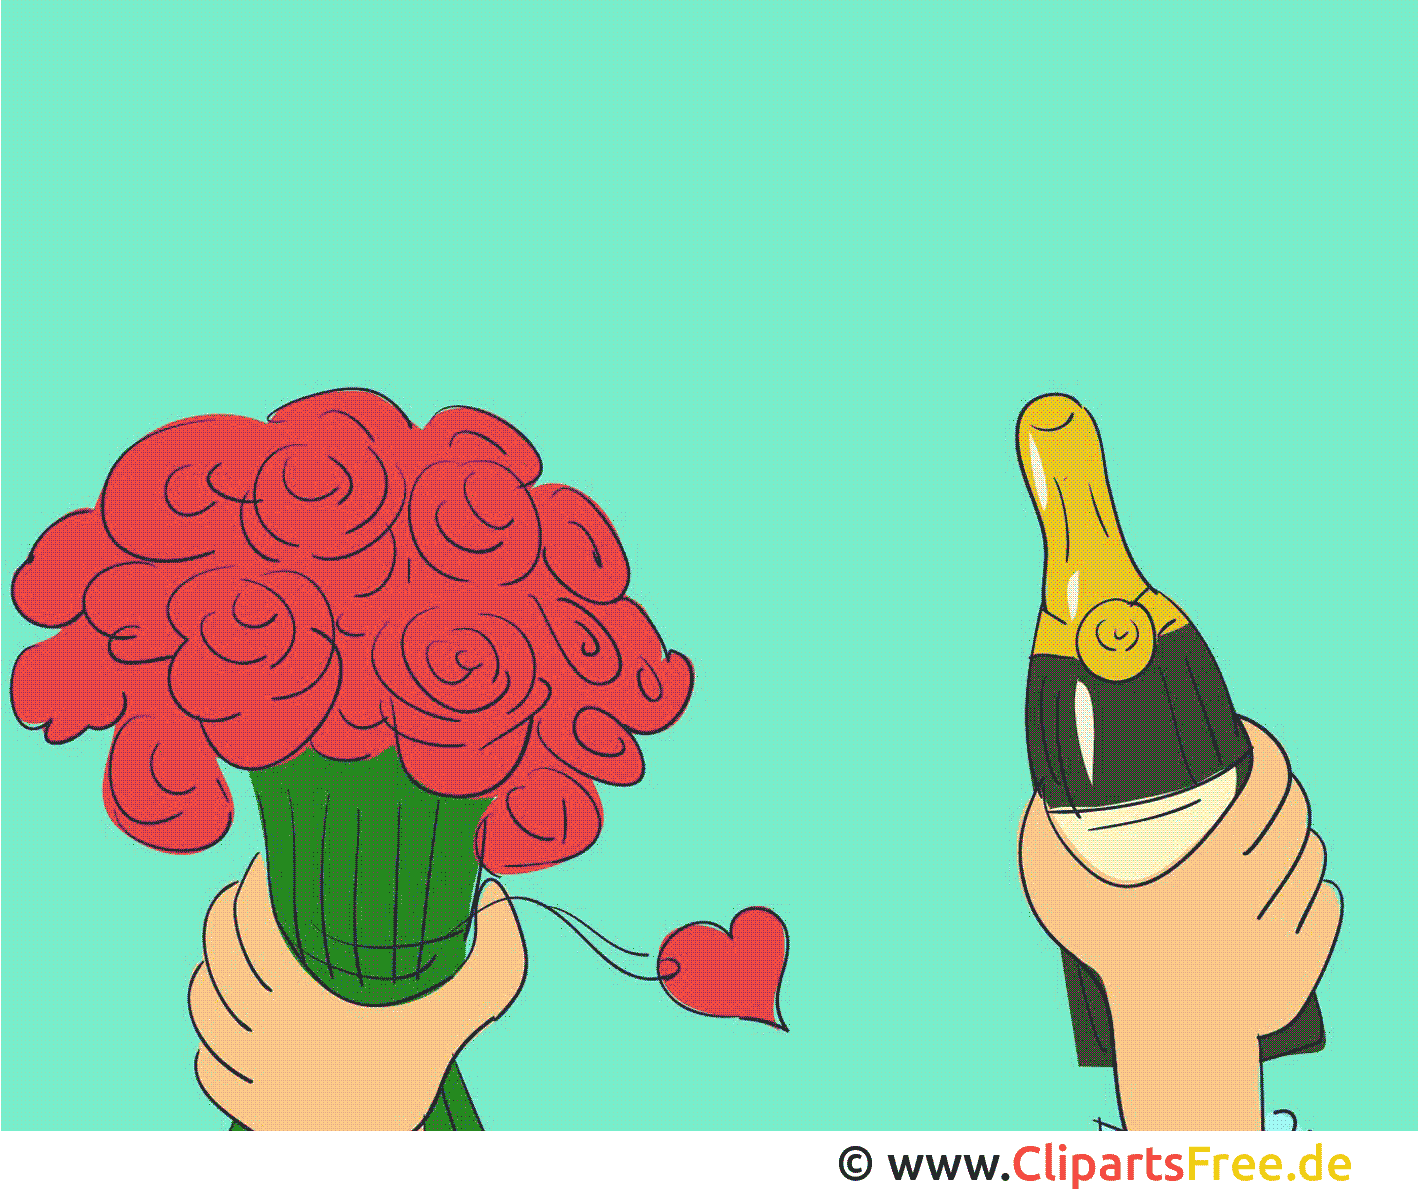 Champagne fête cliparts gratuis - Animation images